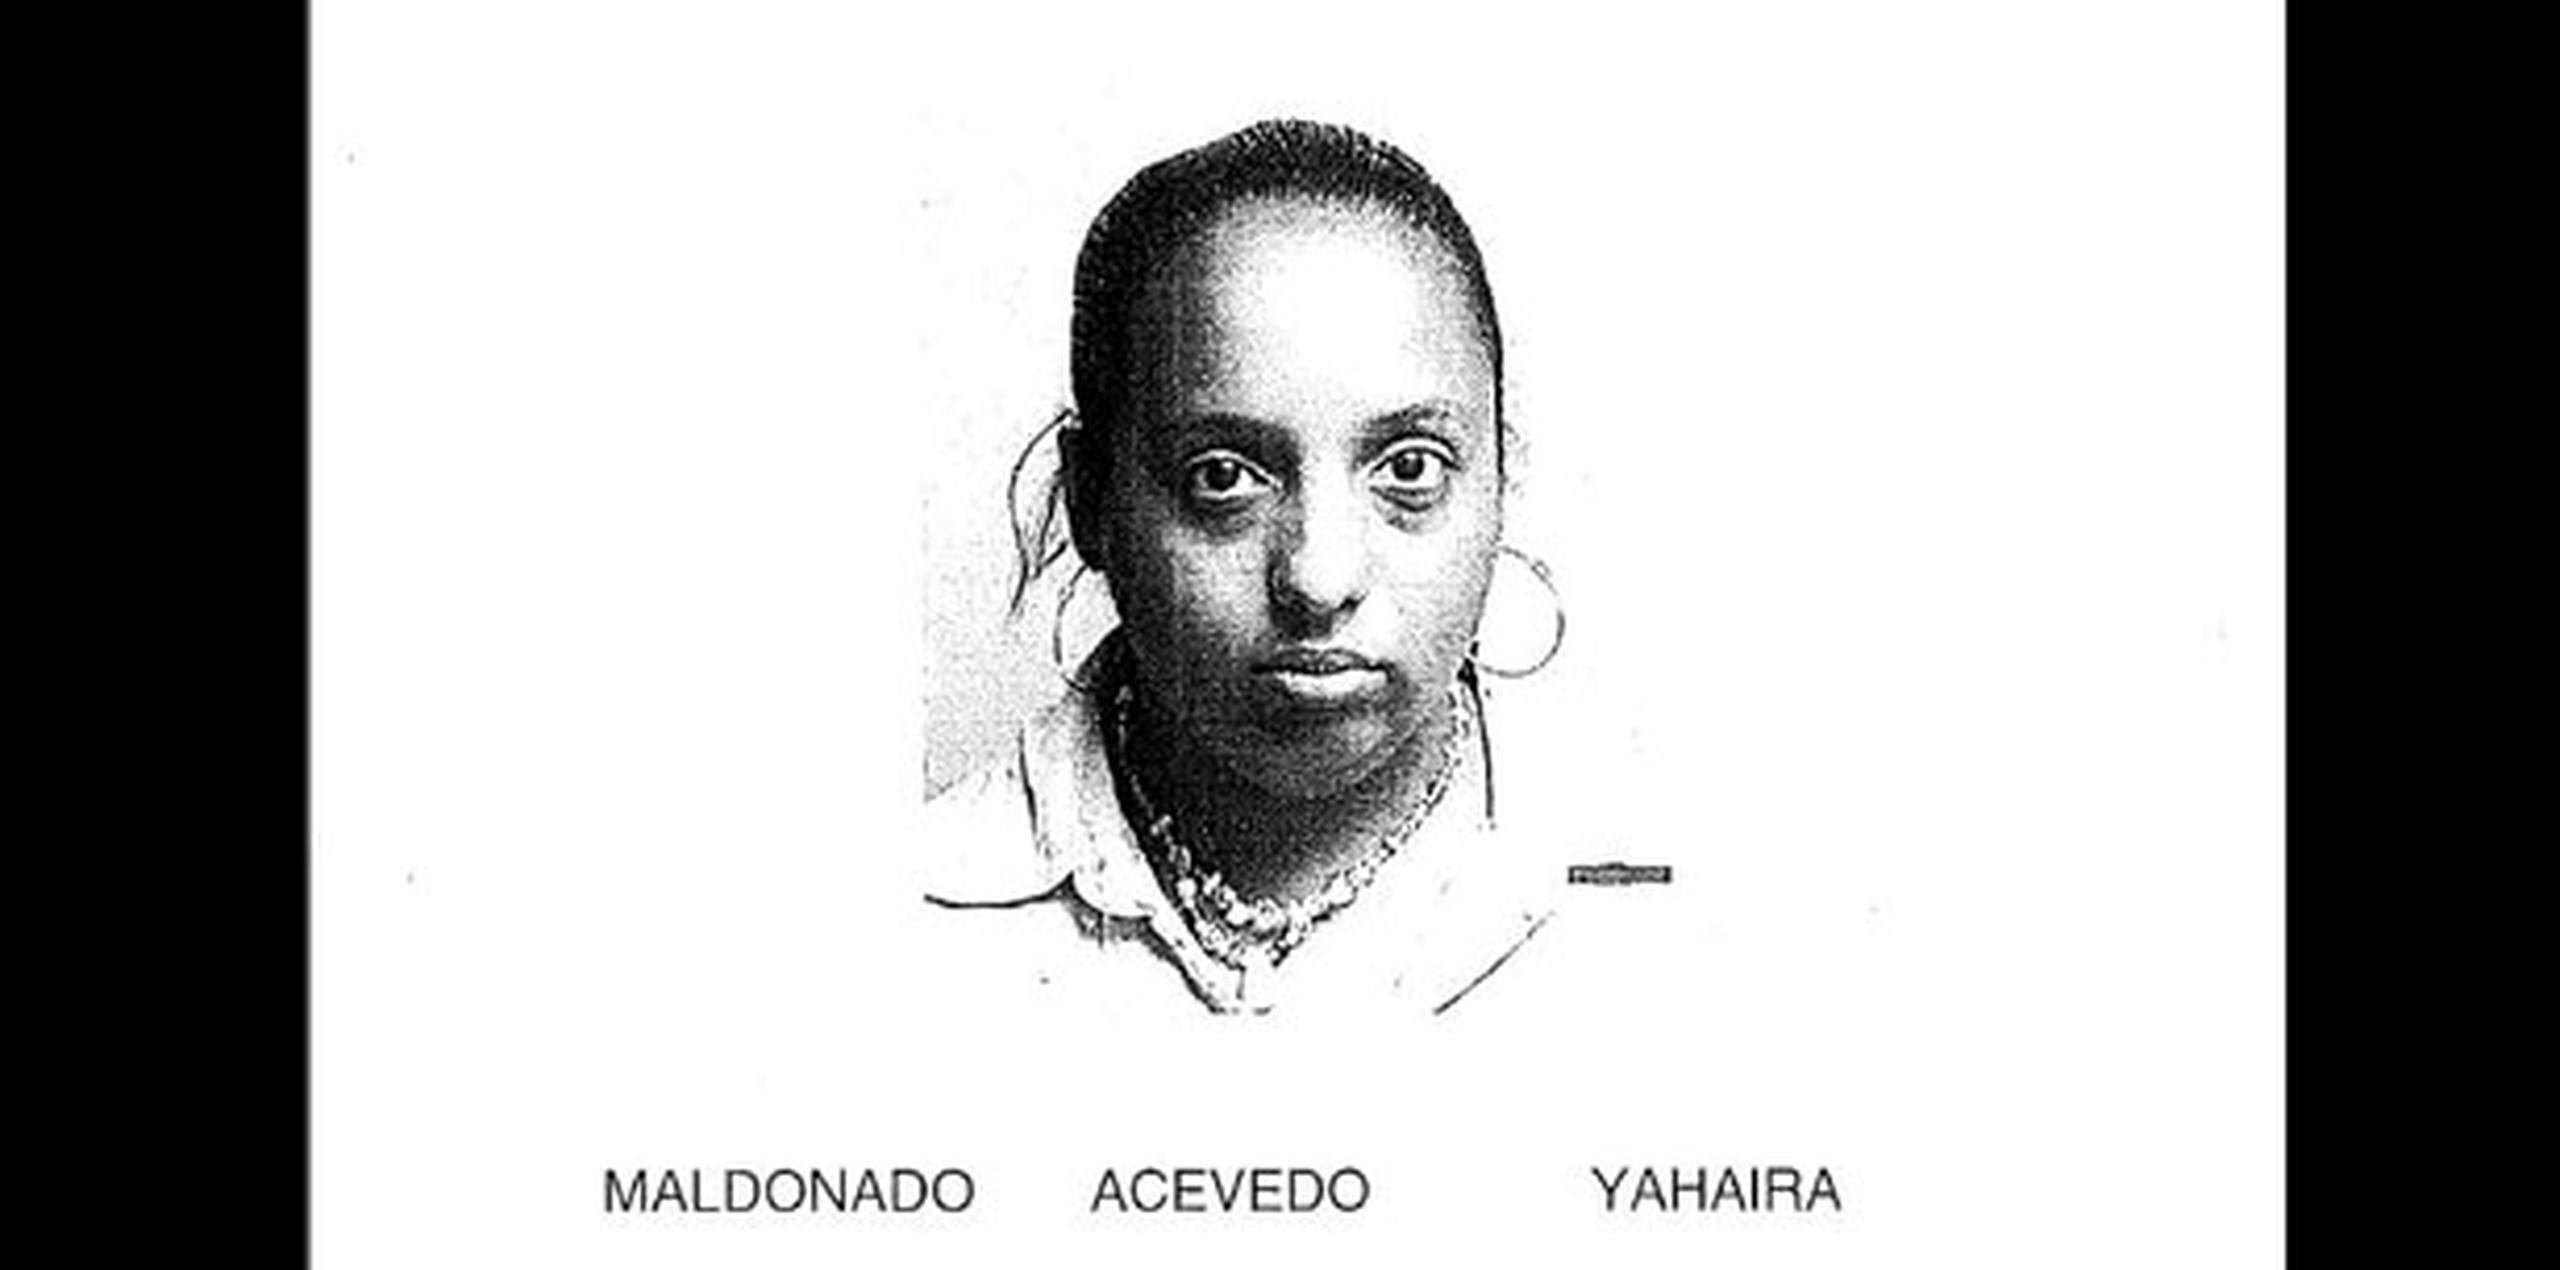 Maldonado Acevedo tiene expediente criminal previo por delitos similares desde 2008. (Suministrada)